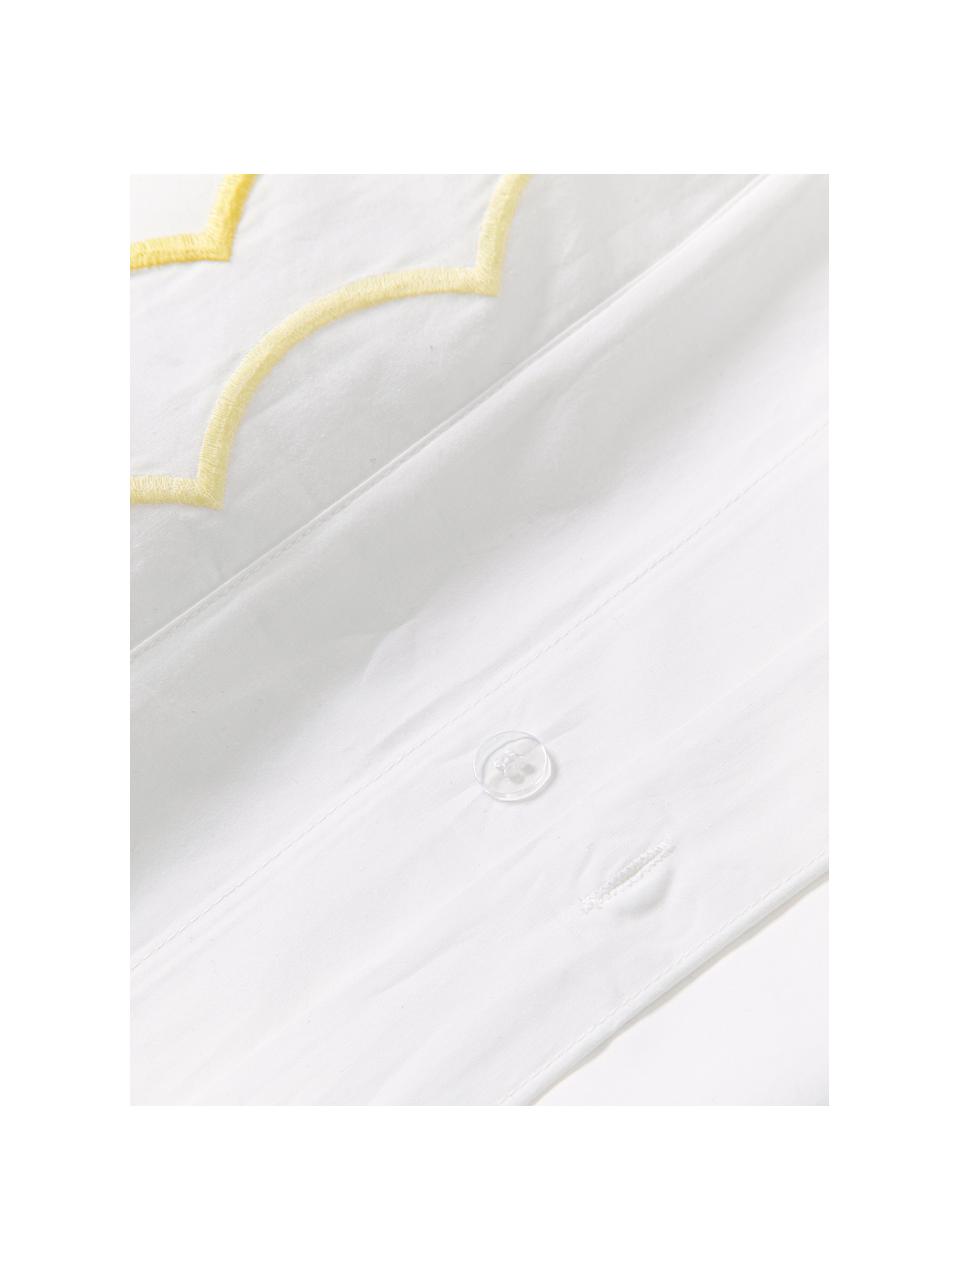 Obliečka na paplón z bavlneného perkálu s vlnitým zvýšeným lemom Atina, 100 % bavlna
Hustota vlákna 200 TC, kvalita Comfort
Posteľná bielizeň z bavlny je príjemná na dotyk, dobre absorbuje vlhkosť a je vhodná pre alergikov
Materiál použitý v tomto výrobku bol testovaný na škodlivé látky a certifikovaný podľa STANDARD 100 by OEKO-TEX® (10817CIT, CITEVE)., Biela, svetložltá, Š 220 x D 240 cm